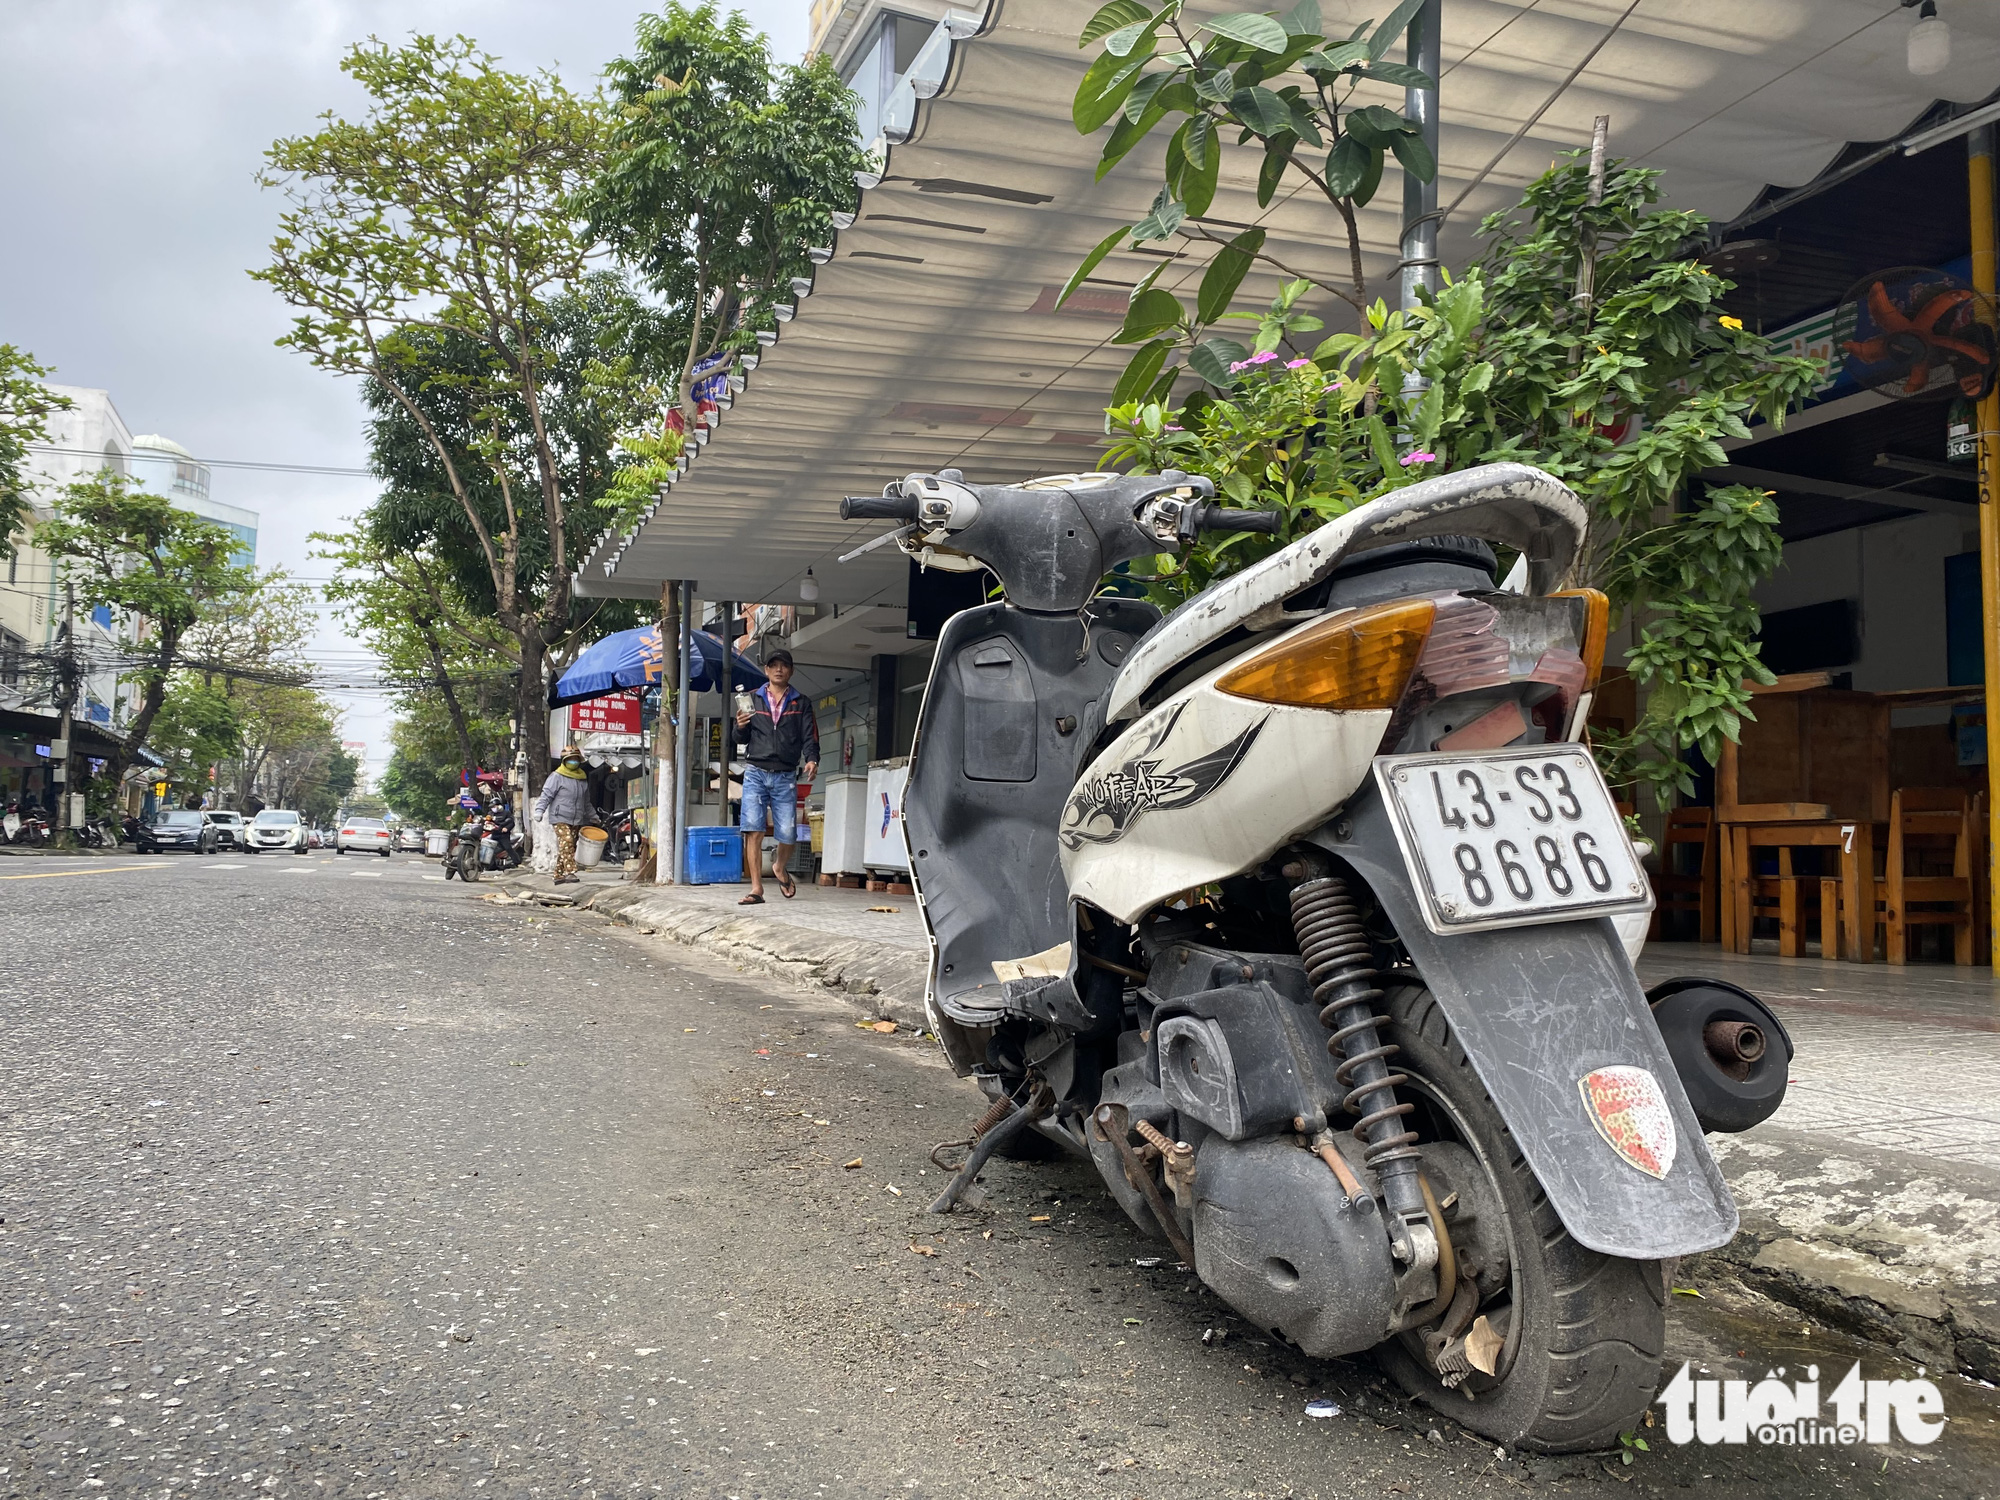 Muôn kiểu xí phần lòng đường để cản trở đậu ô tô ở Đà Nẵng - Ảnh 2.